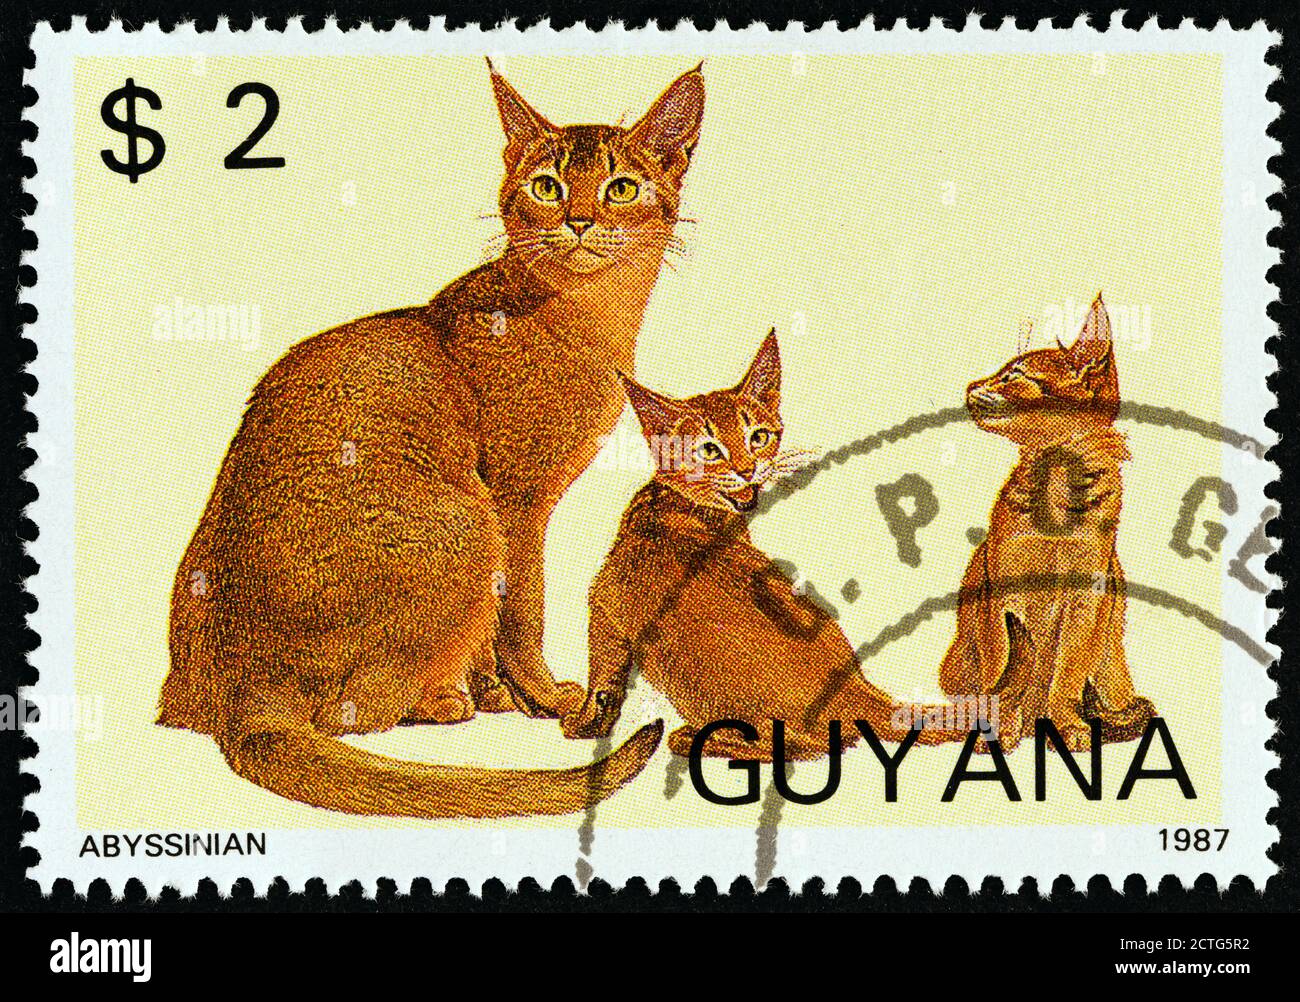 GUYANA - VERS 1988: Un timbre imprimé au Guyana à partir du numéro des «Cats» montre Abyssinian, vers 1988. Banque D'Images